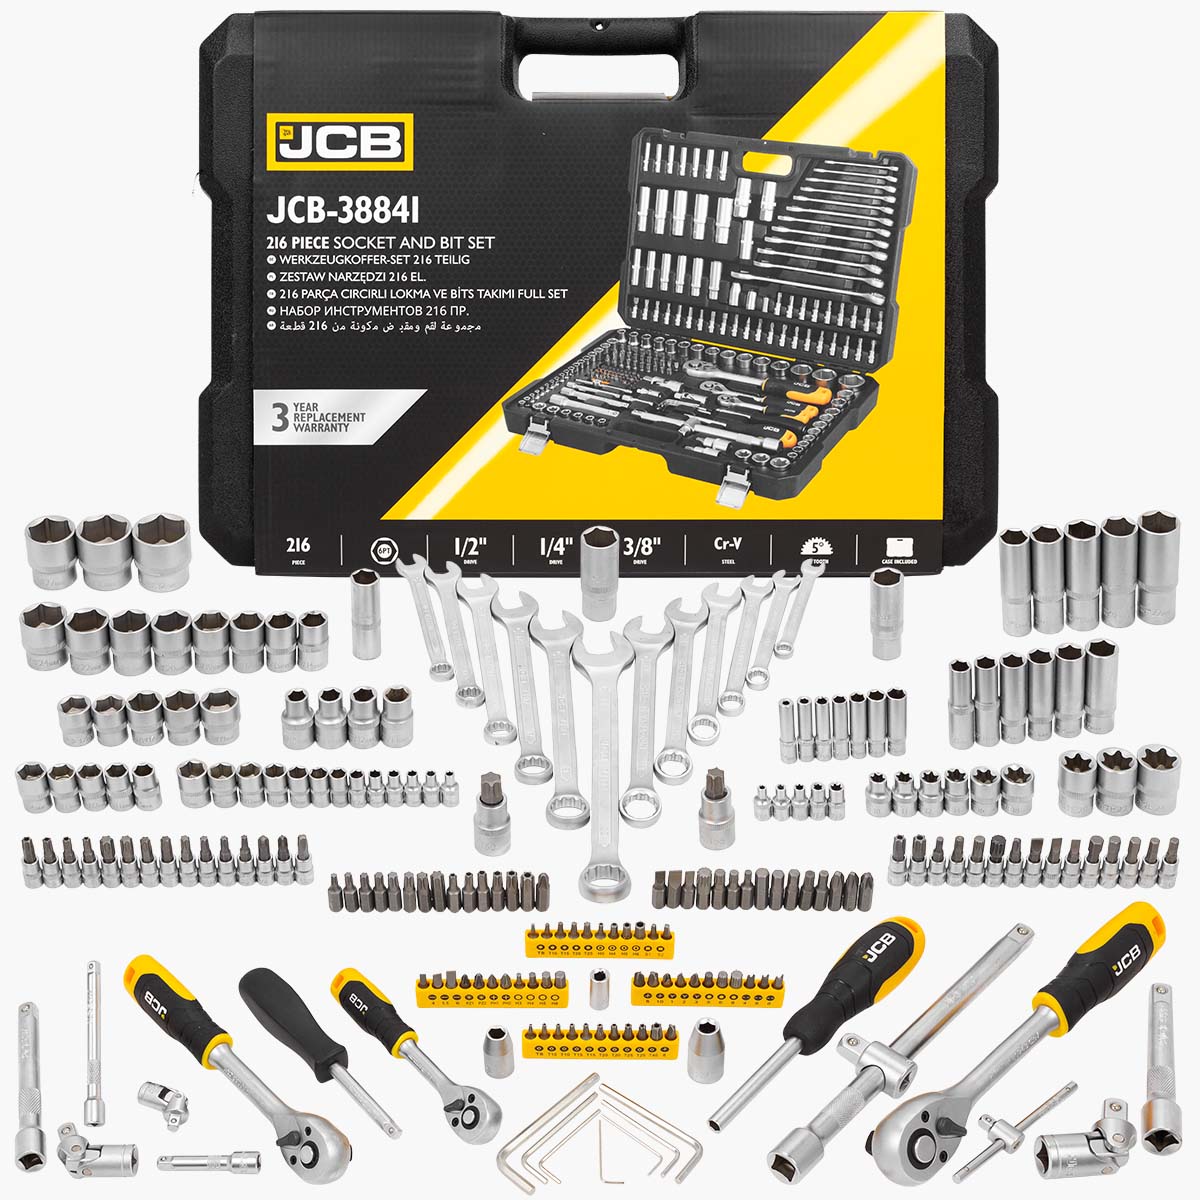 JCB 216 Piece Socket and Bit Set JCB-38841